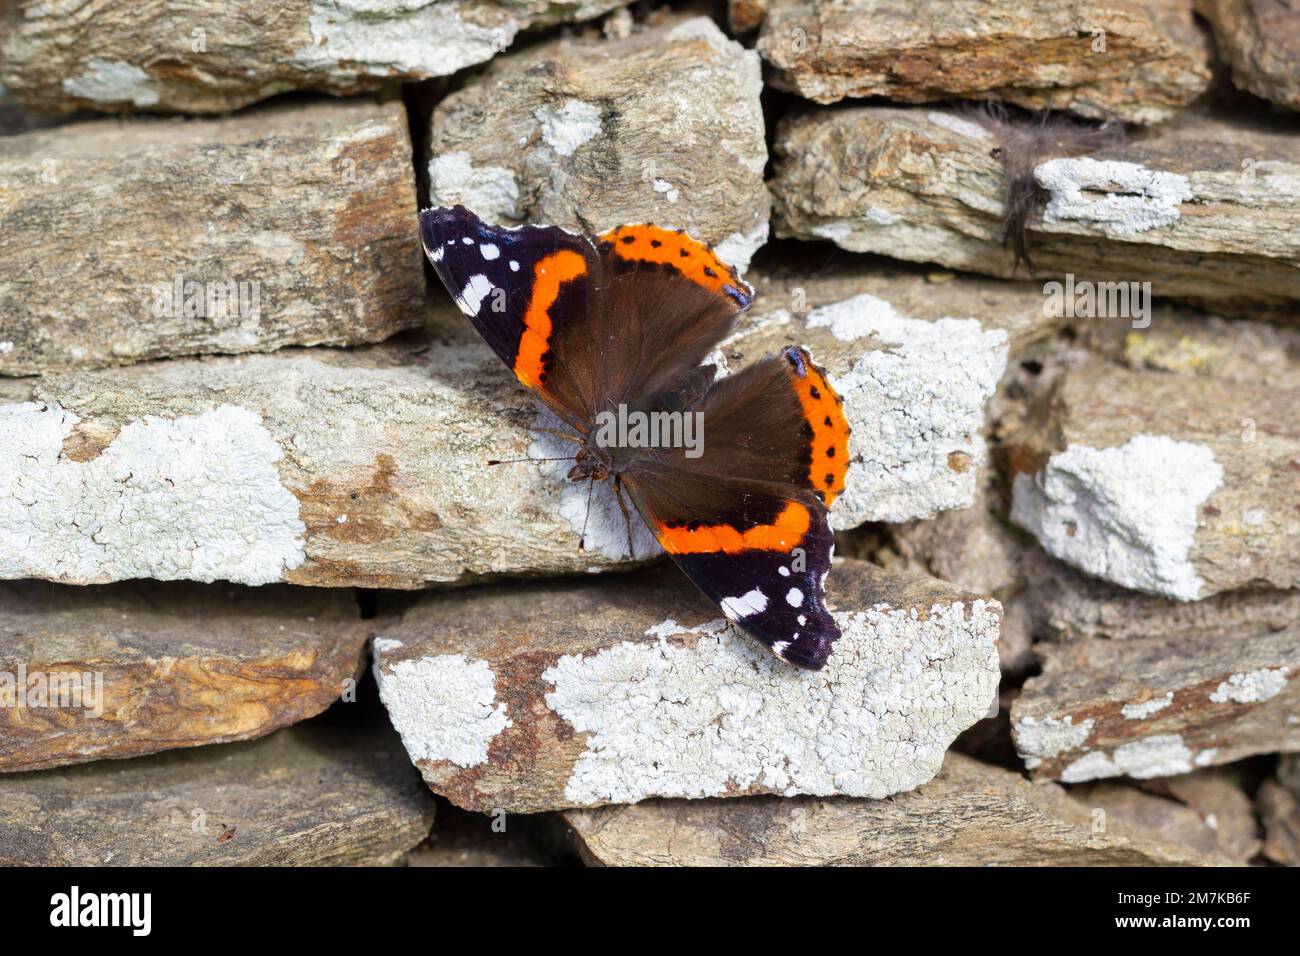 Wunderschöner Schmetterling, der an der Felswand sitzt Stockfoto